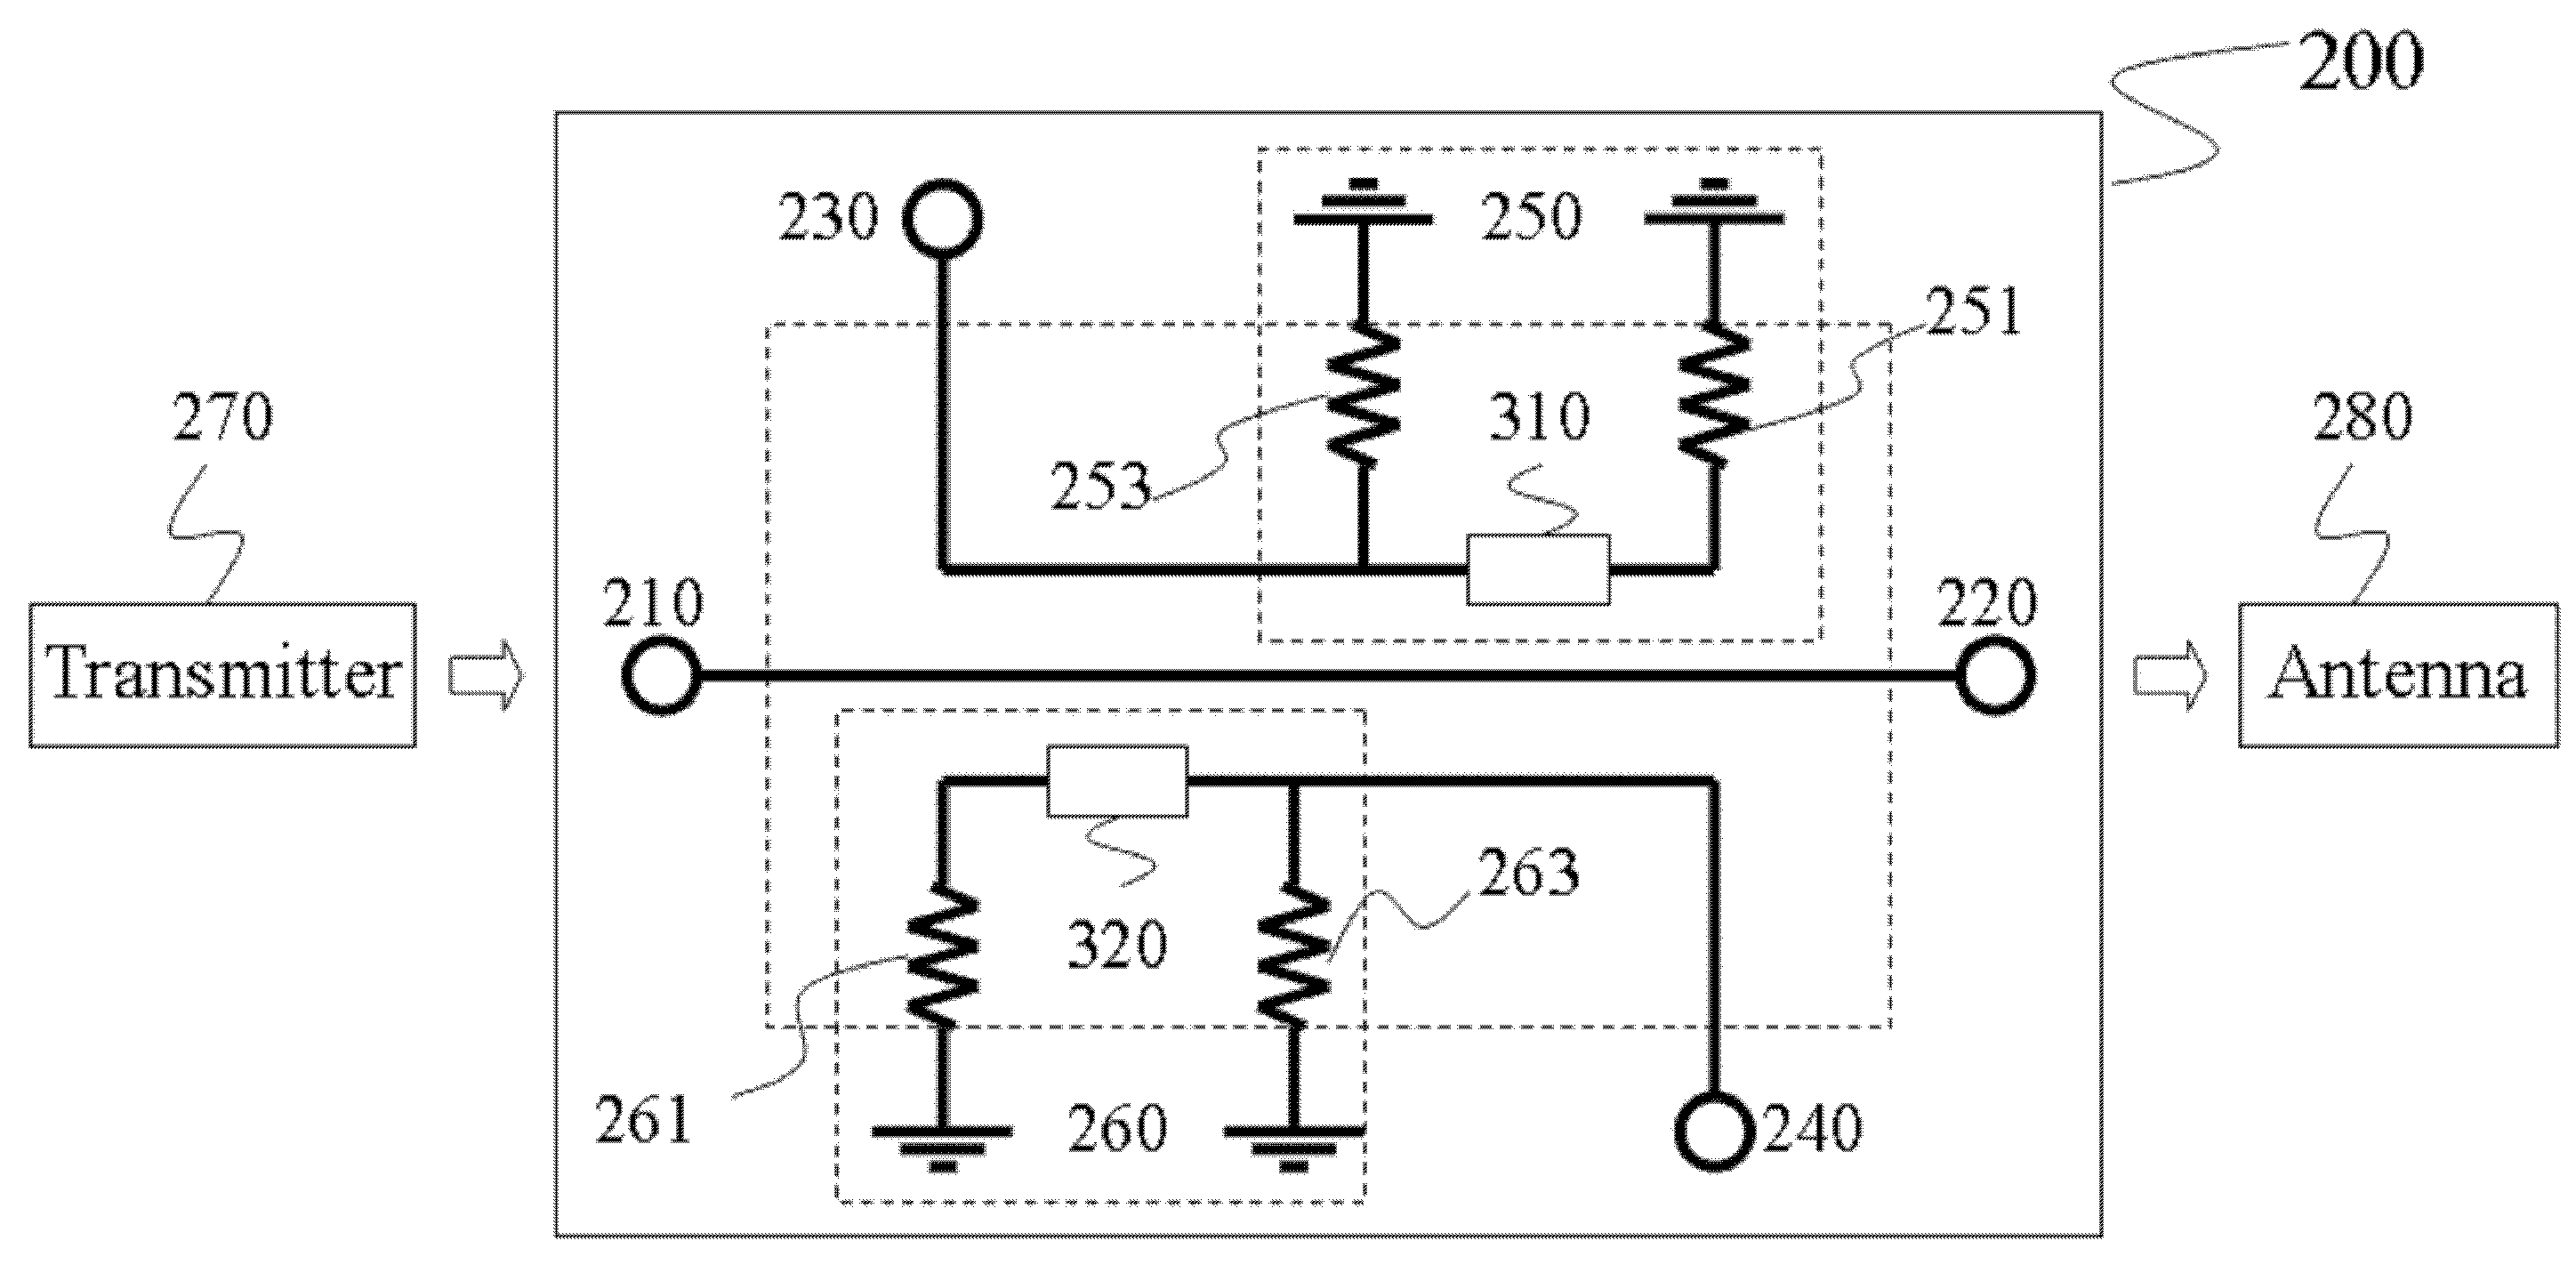 Terminal circuit and bi-directional coupler using the terminal circuit